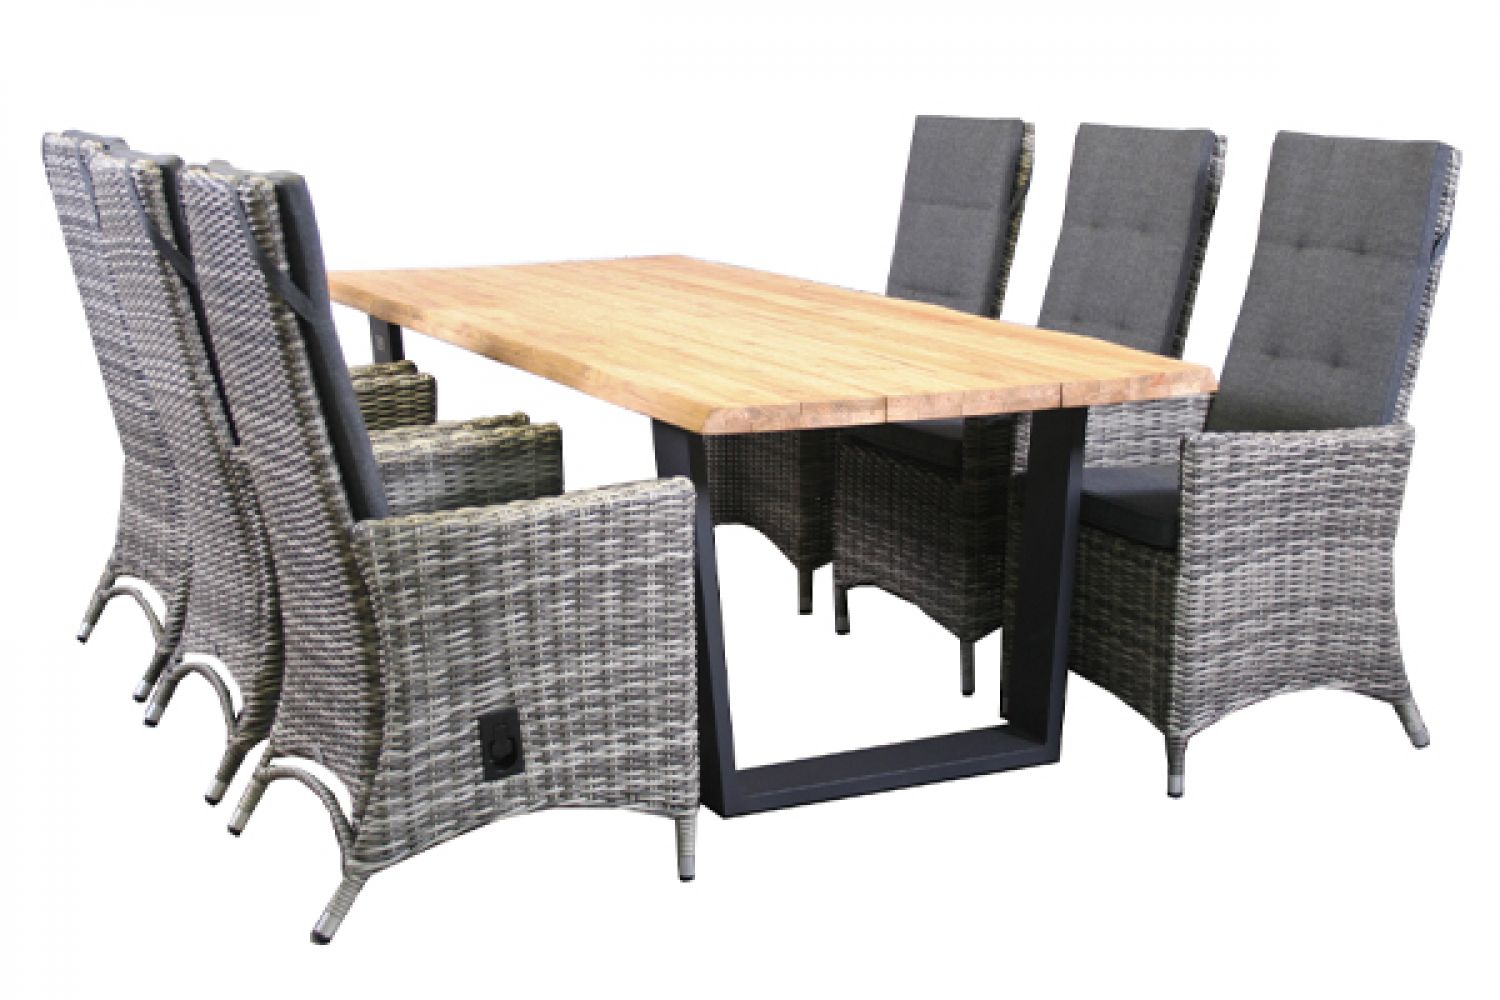 Tuinset Ferro - 6 wicker stoelen met teakhouten tafel